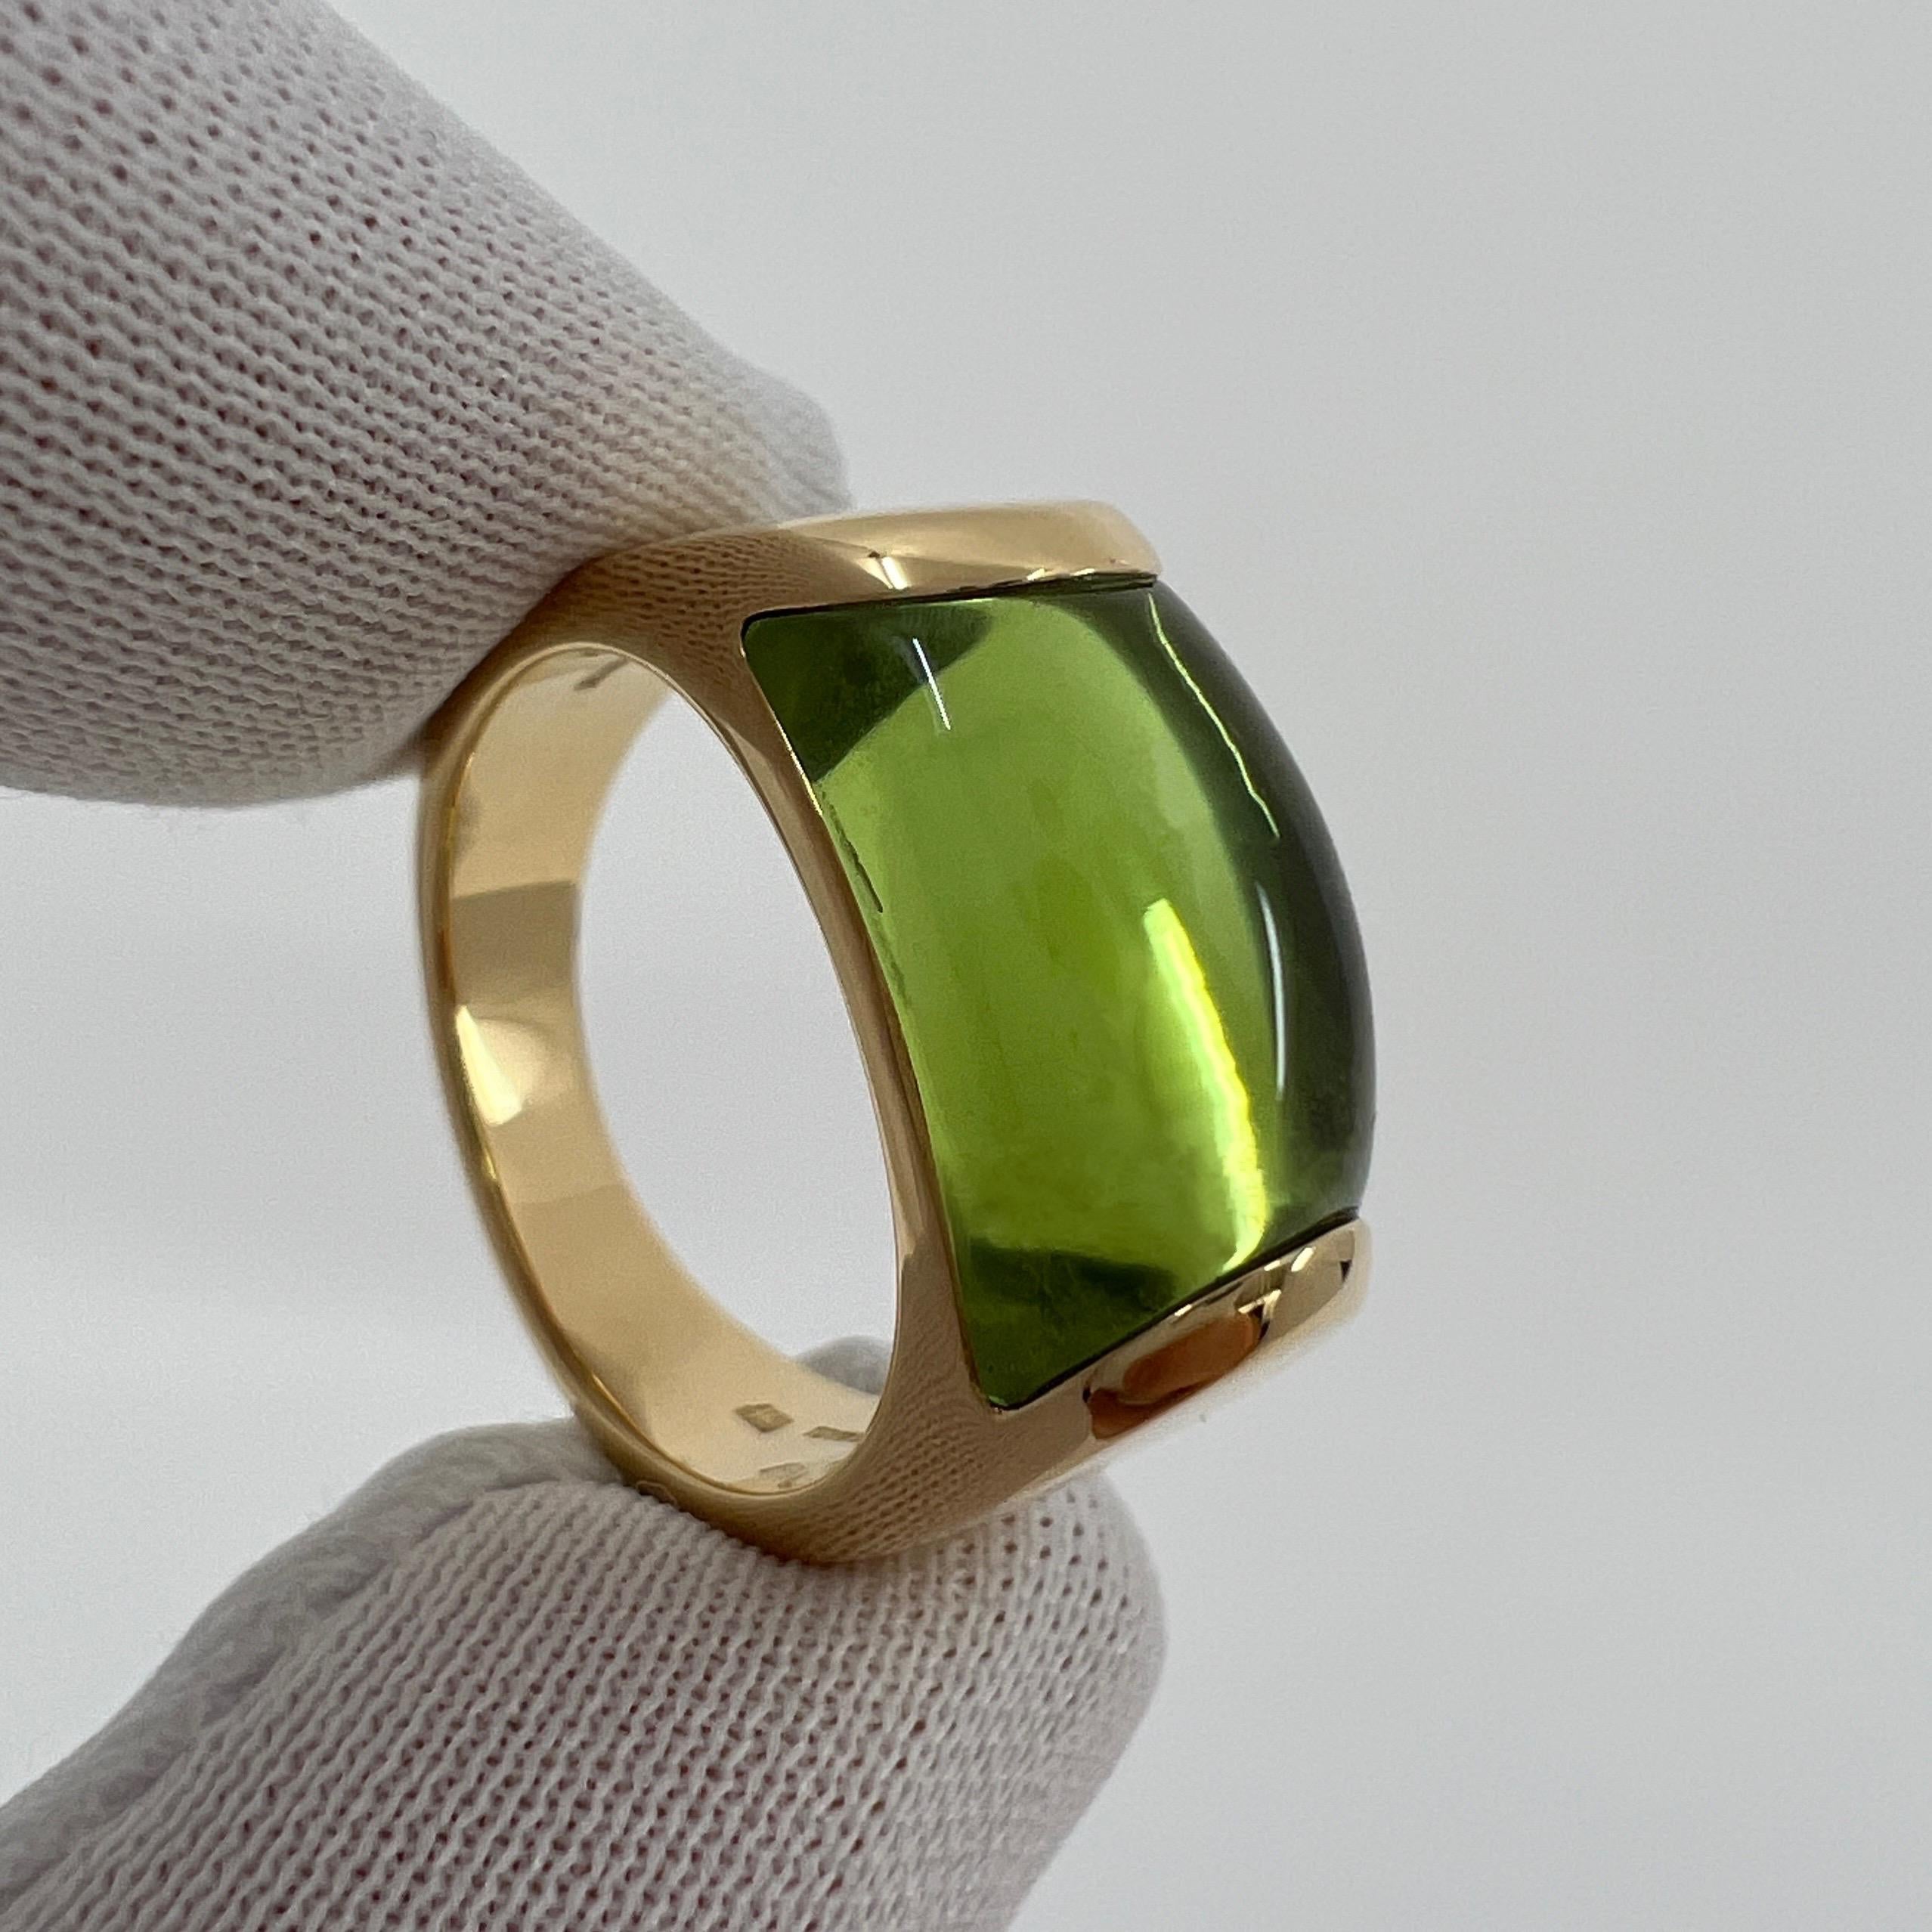 Women's or Men's Rare Bvlgari Bulgari Tronchetto 18k Yellow Gold Green Tourmaline Ring with Box